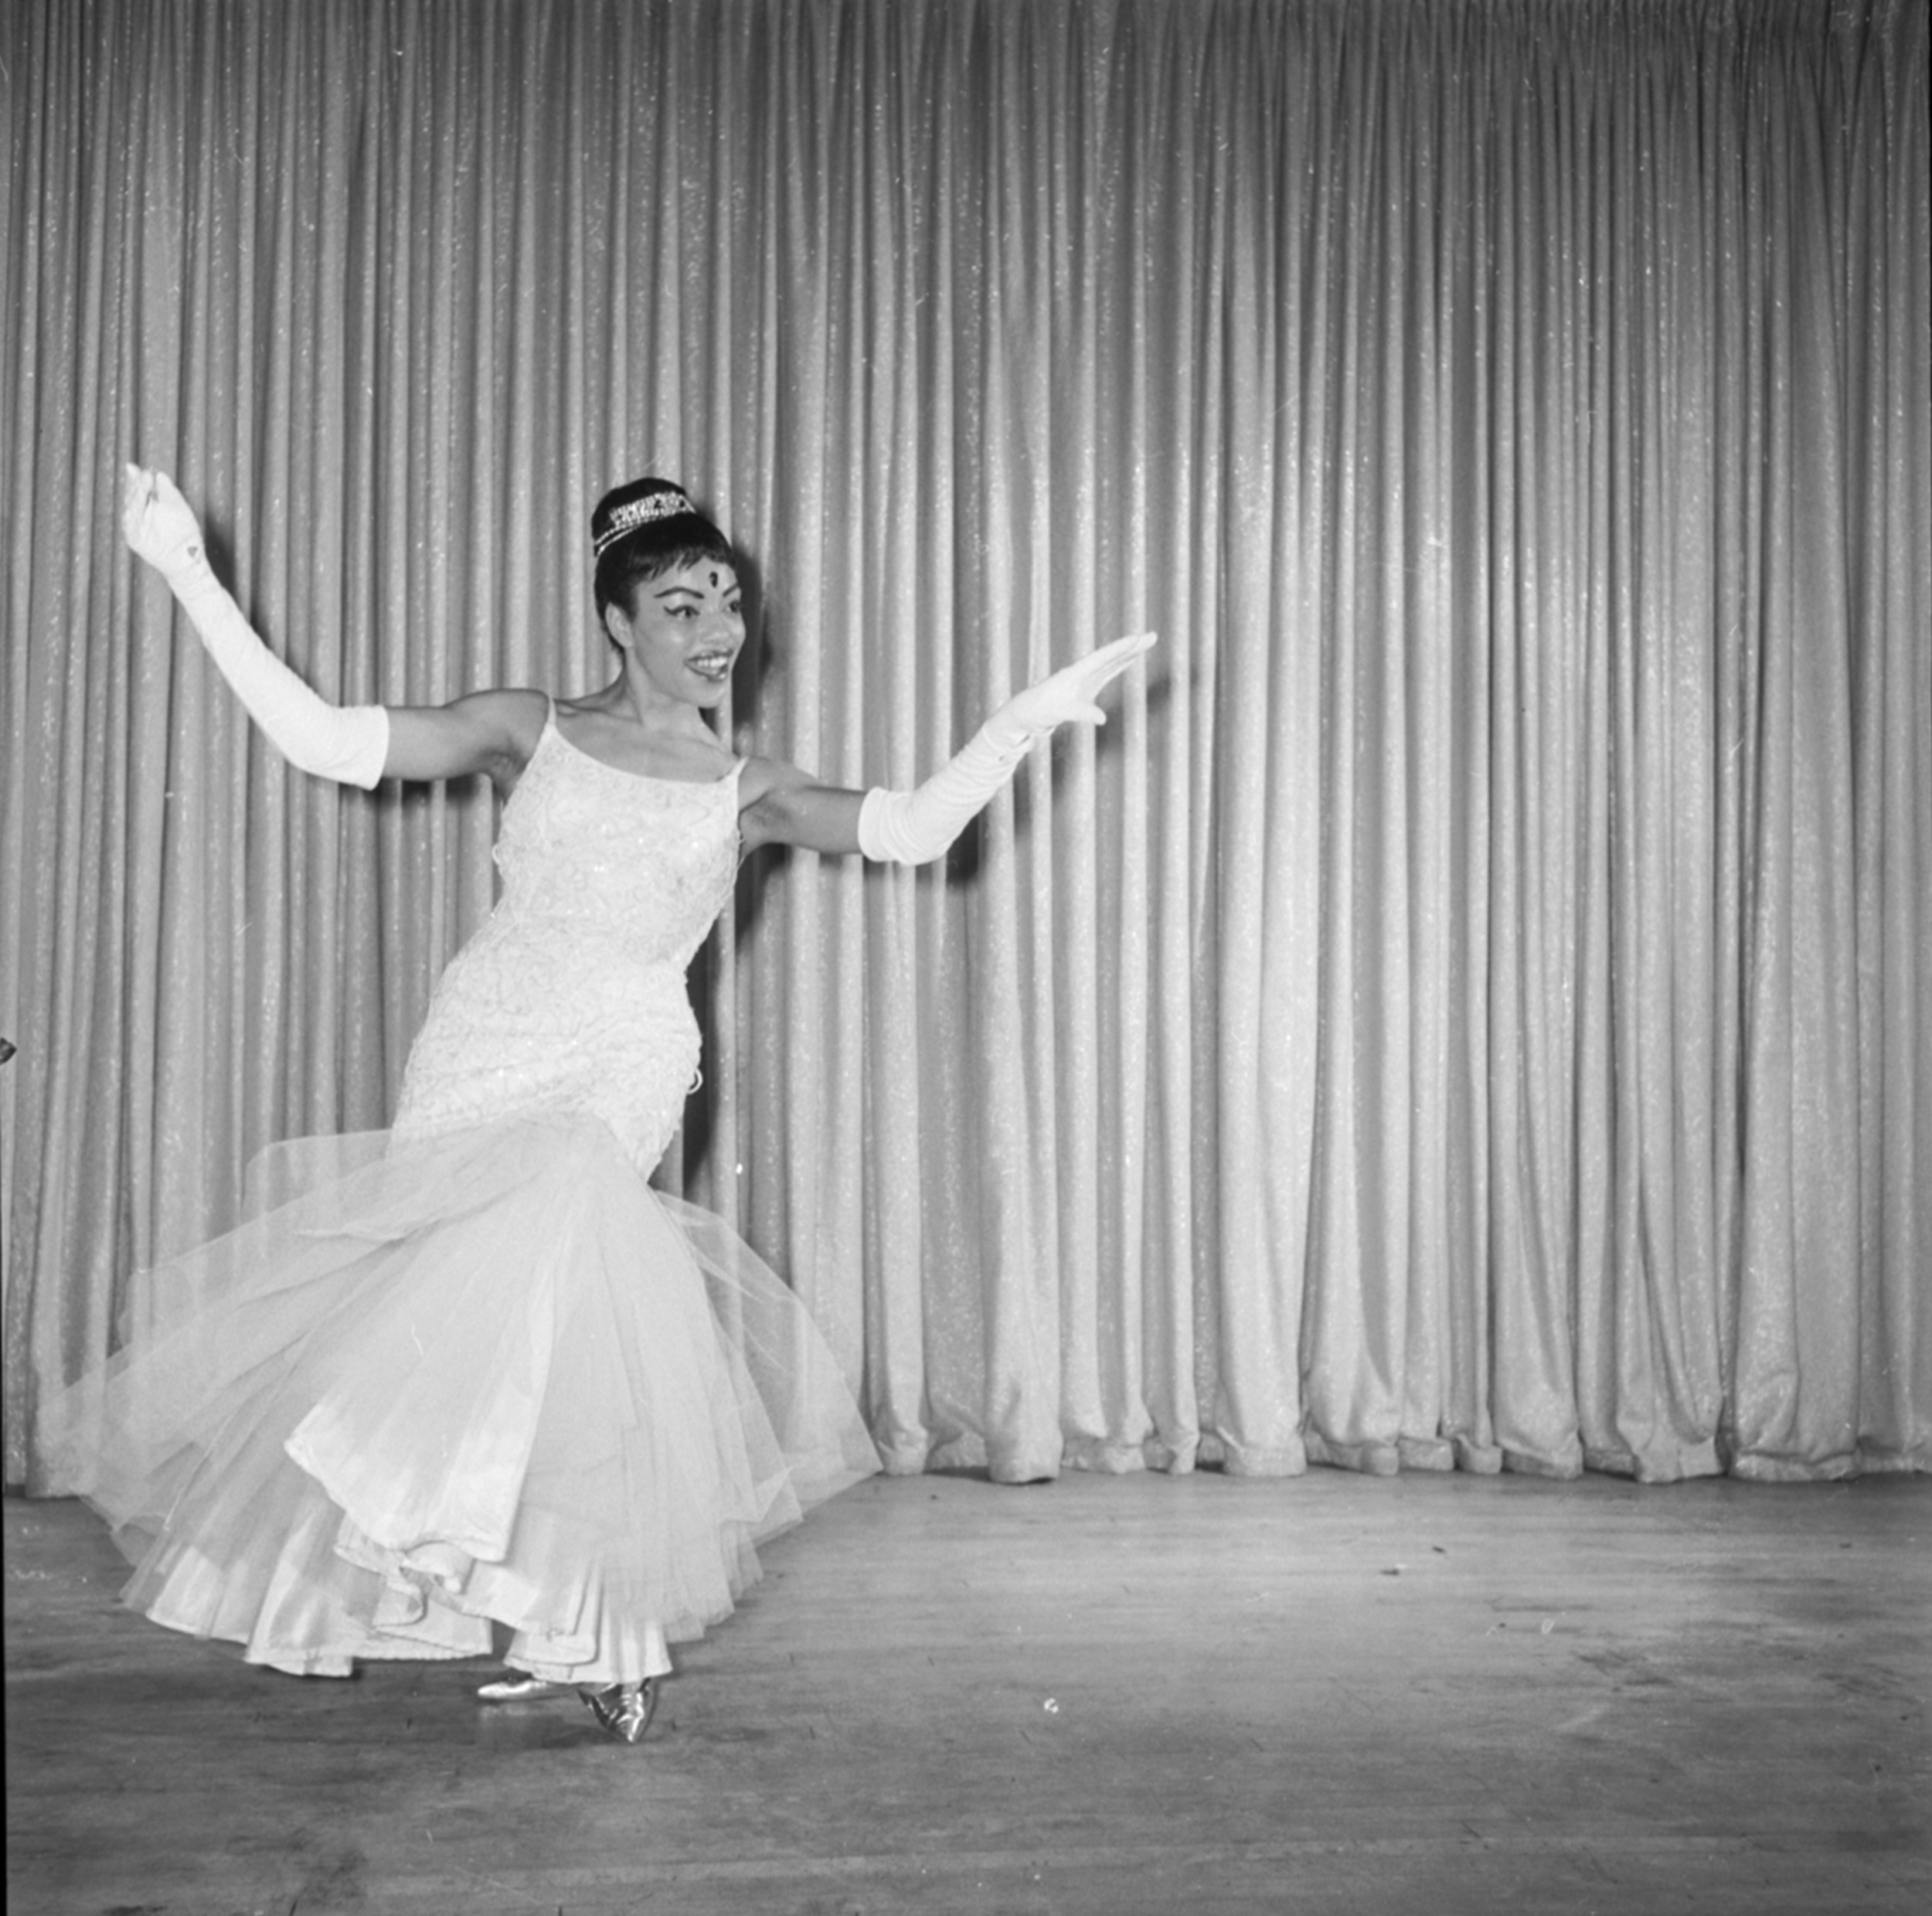 Carver House talent show, April 4, 1962, Image 01